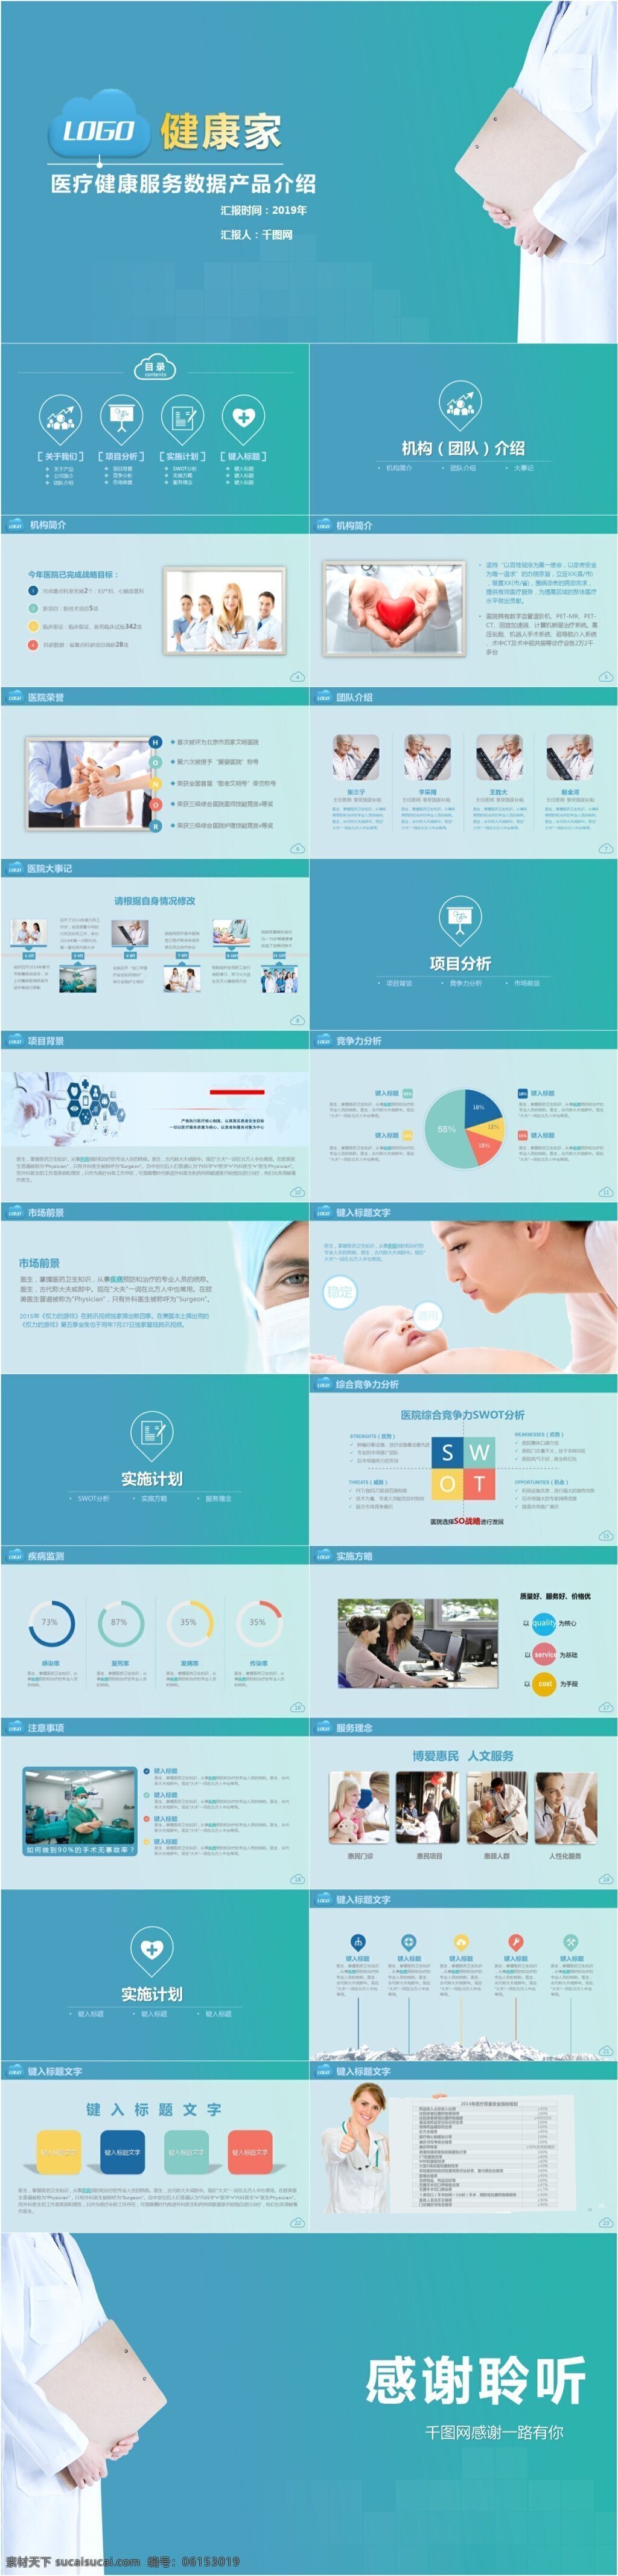 医疗 健康 产品 介绍 模板 扁平化 通用 方案 产品设计 宣传 医疗ppt